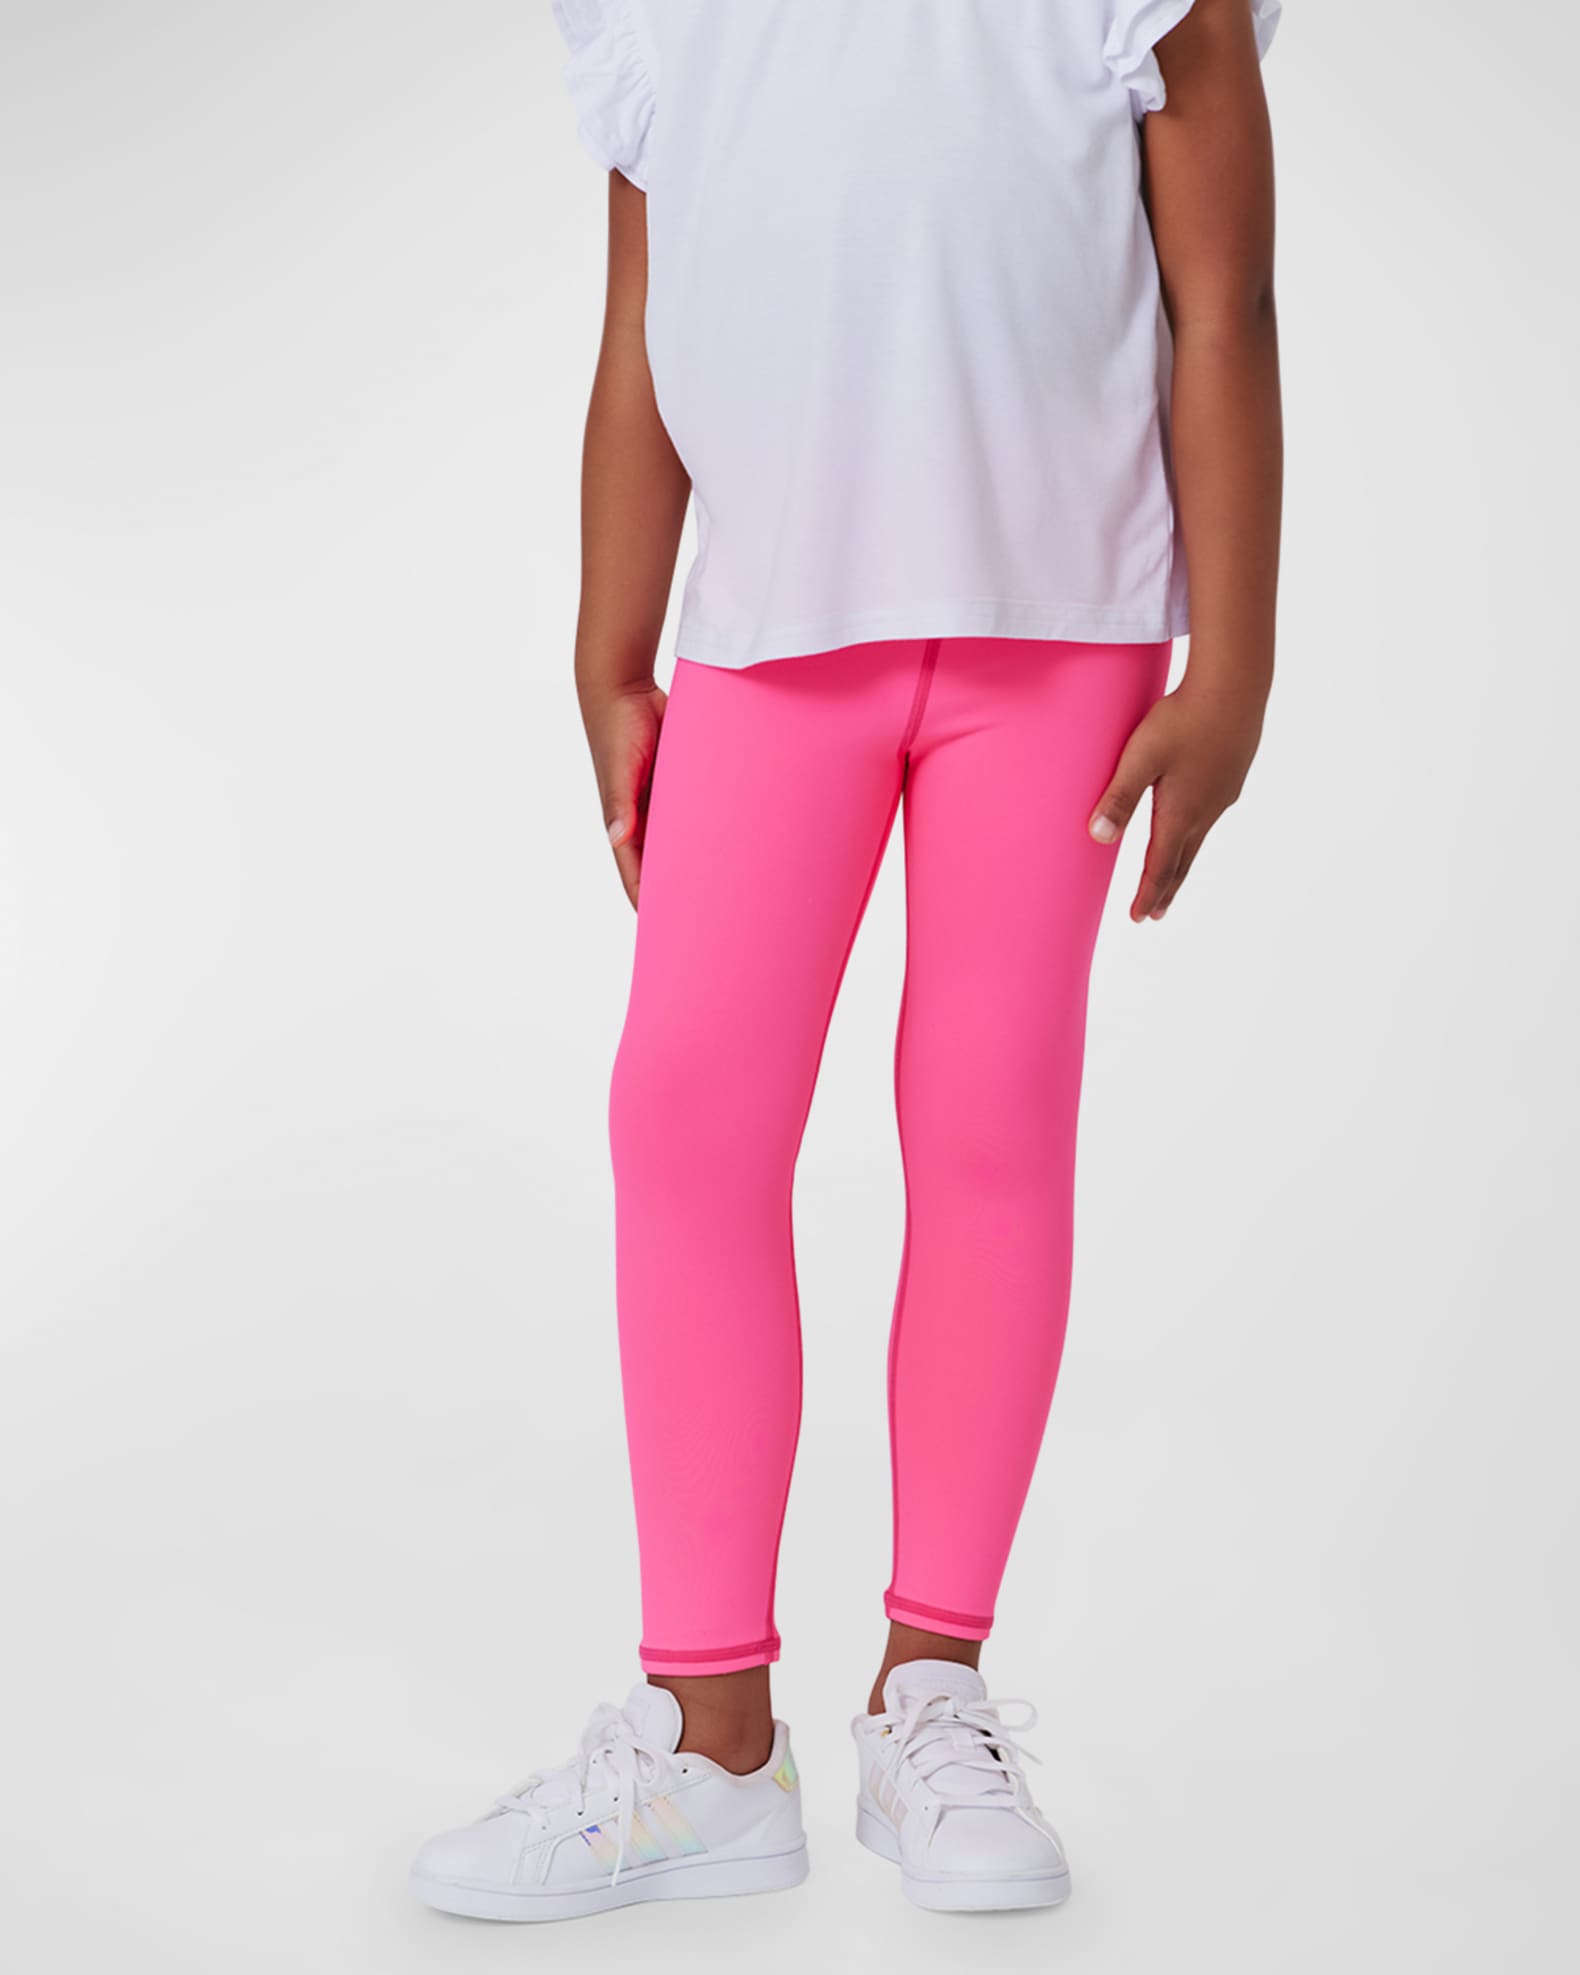 Terez Girl's Barbie Girl Pink Leggings, Size 2T-6